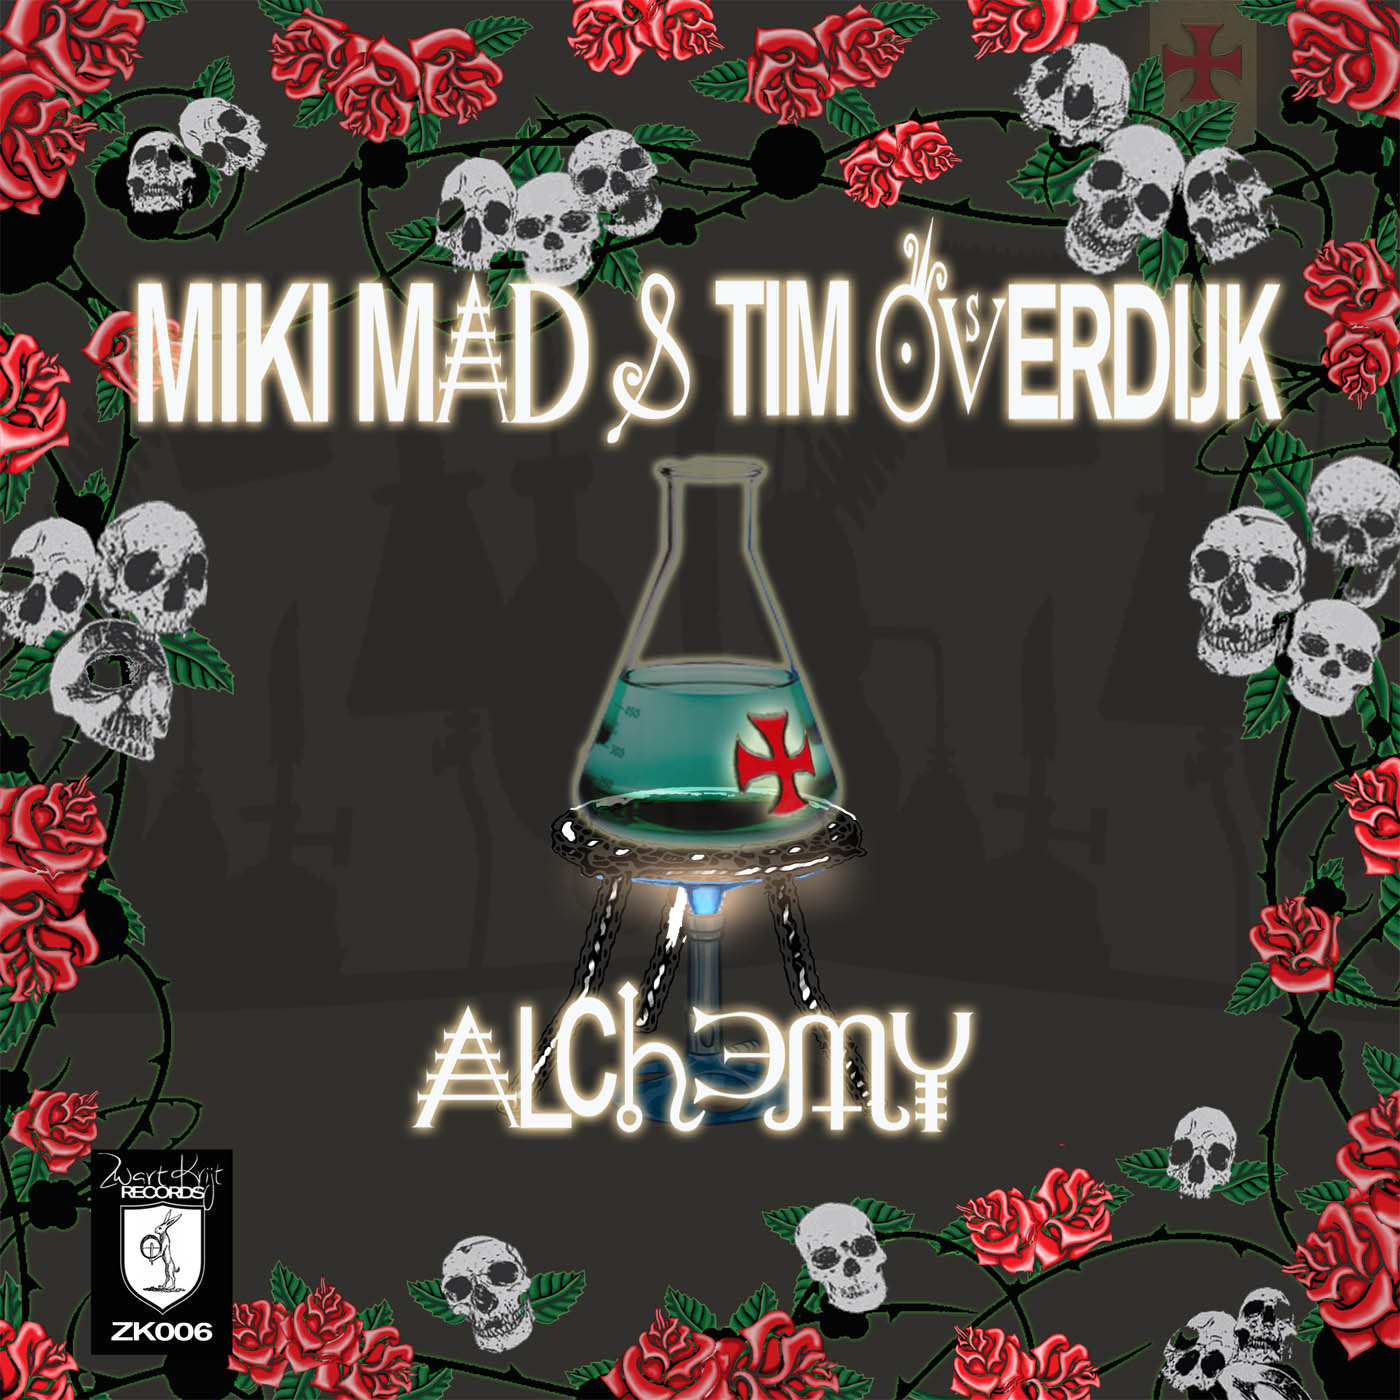 Alchemy - Miki Mad & Tim Overdijk